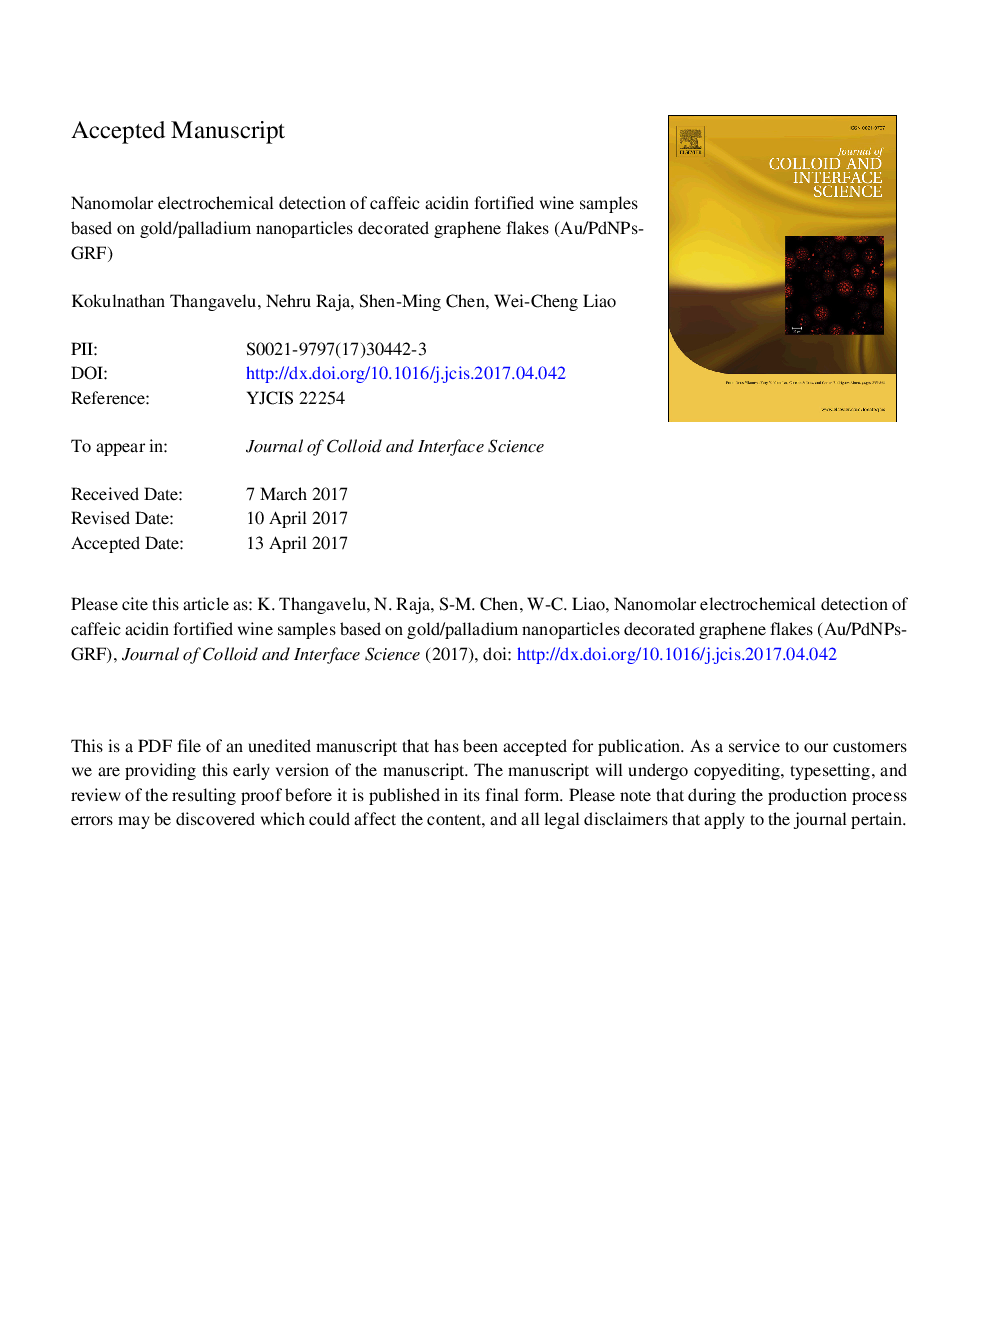 تشخیص الکتروشیمیایی نانوذرات اسید کافئیک در نمونه شراب غنی شده بر پایه نانوذرات طلا / پالادیوم تزئین شده گرافن 